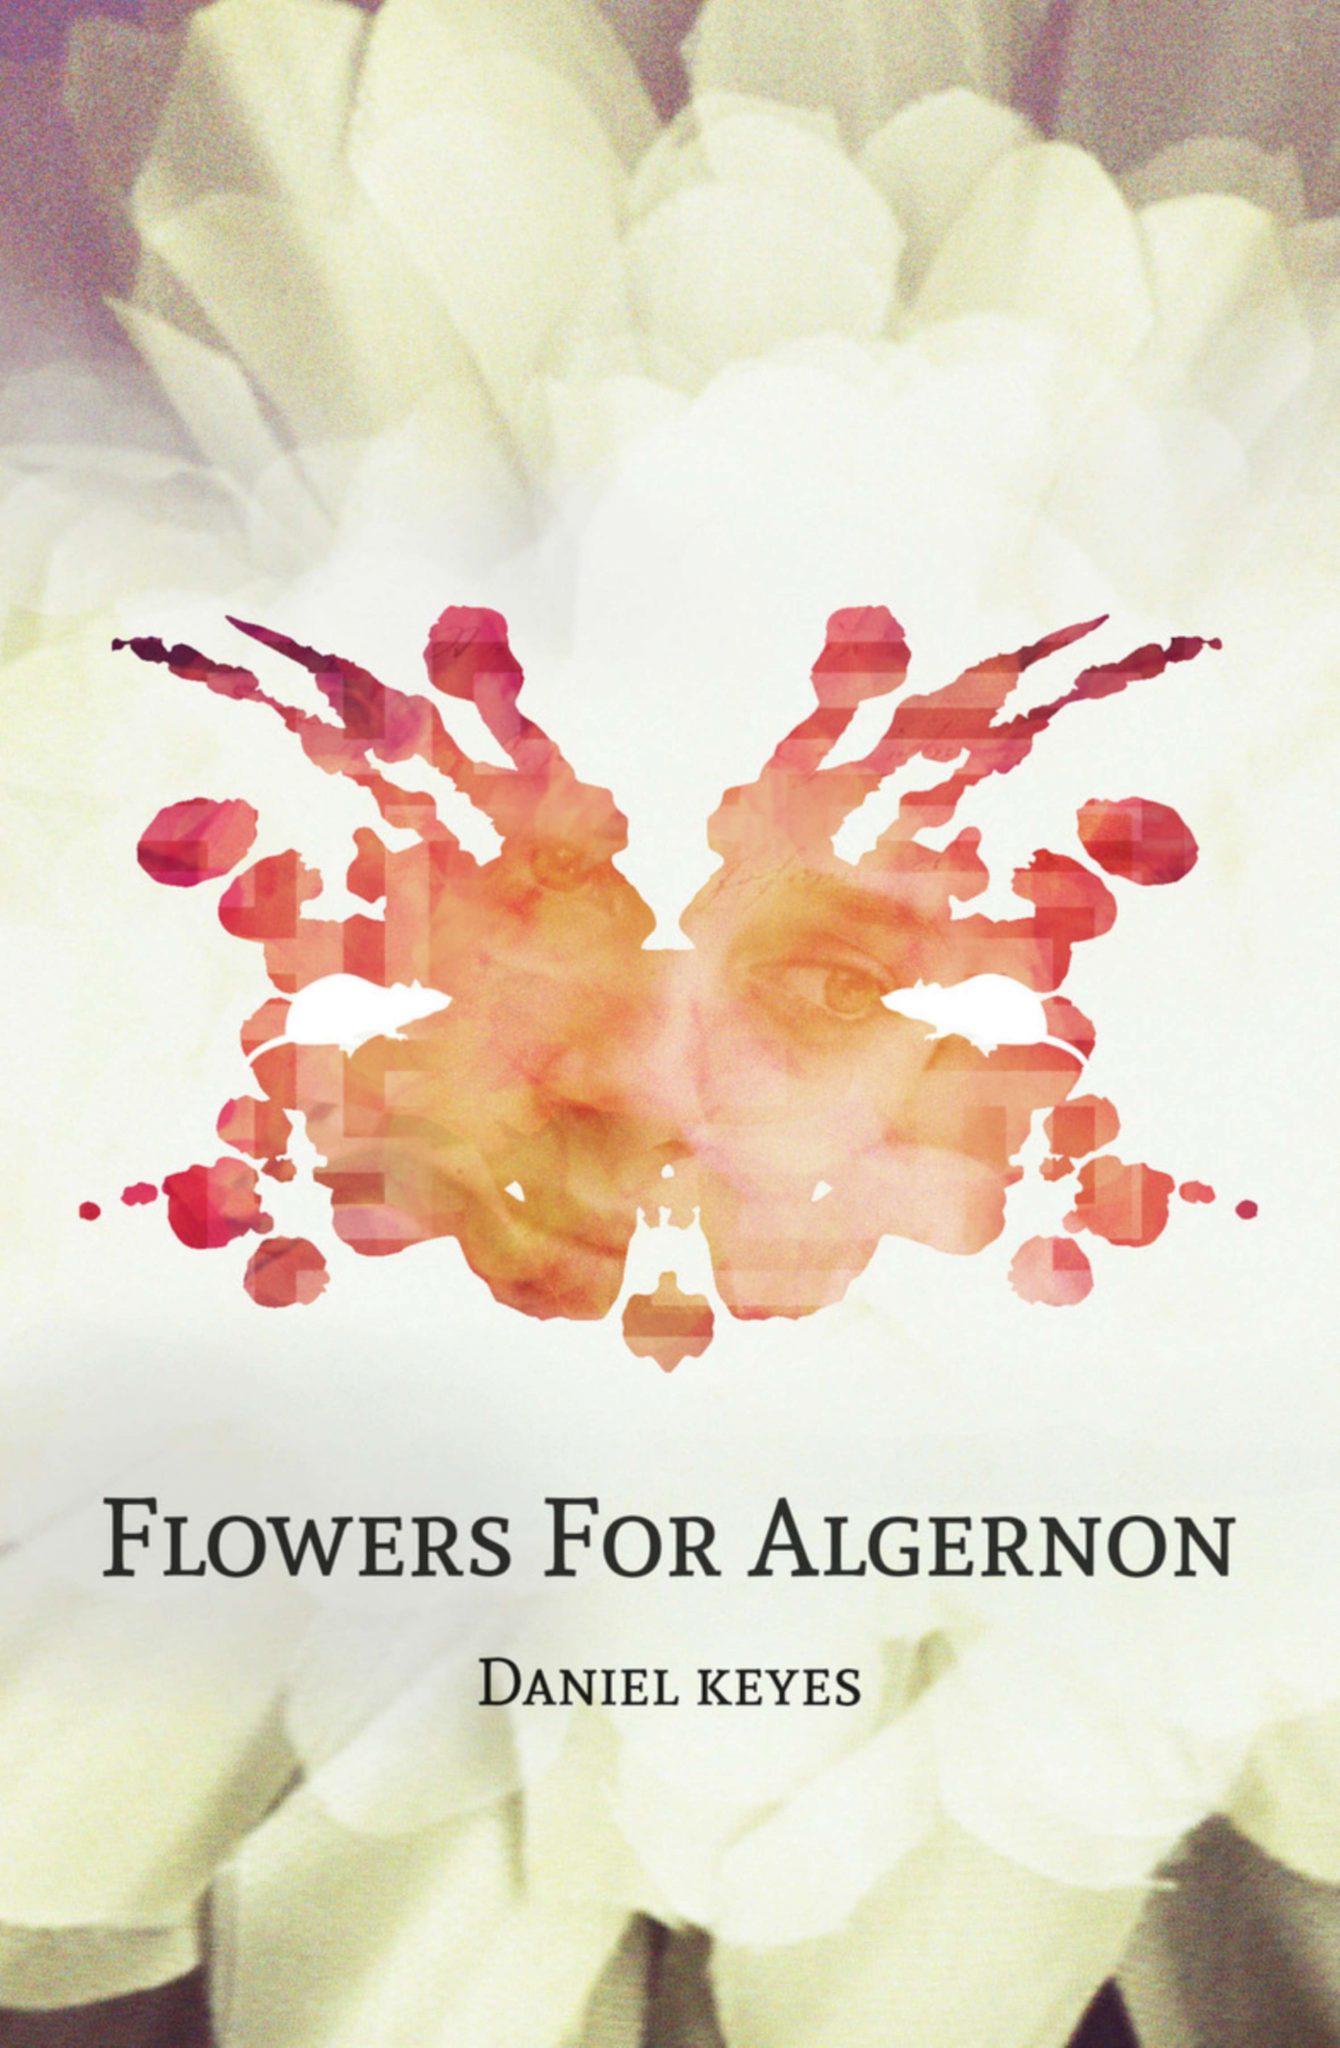 Flowers for algernon essays